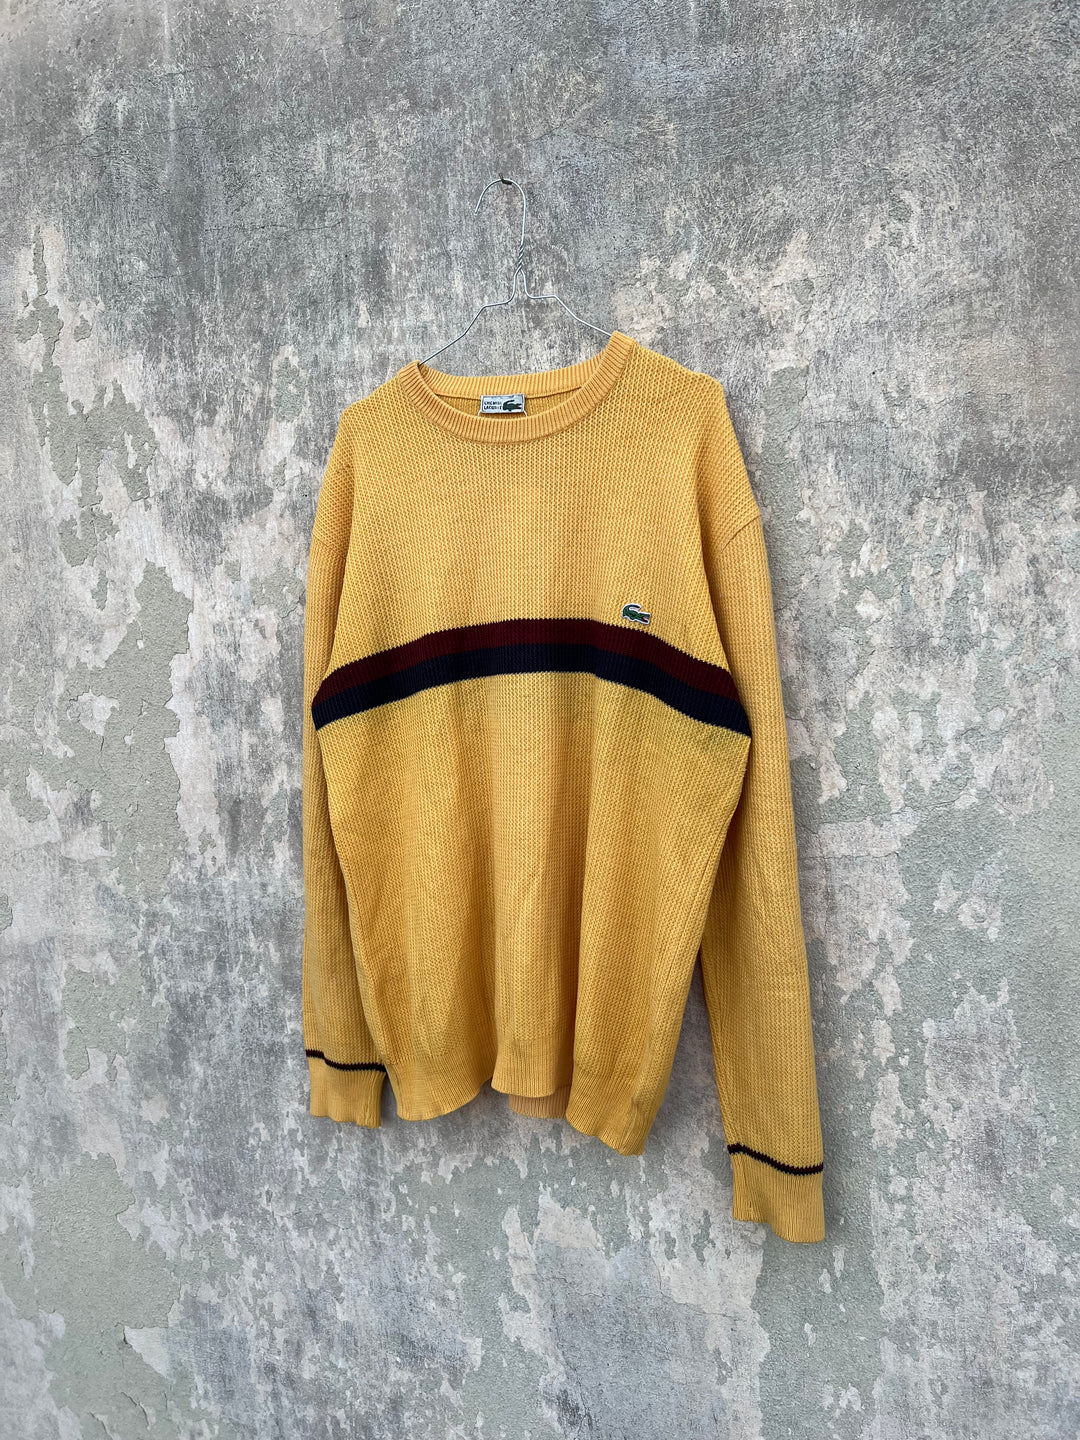 Chemise Lacoste Sweater Men's L/XL